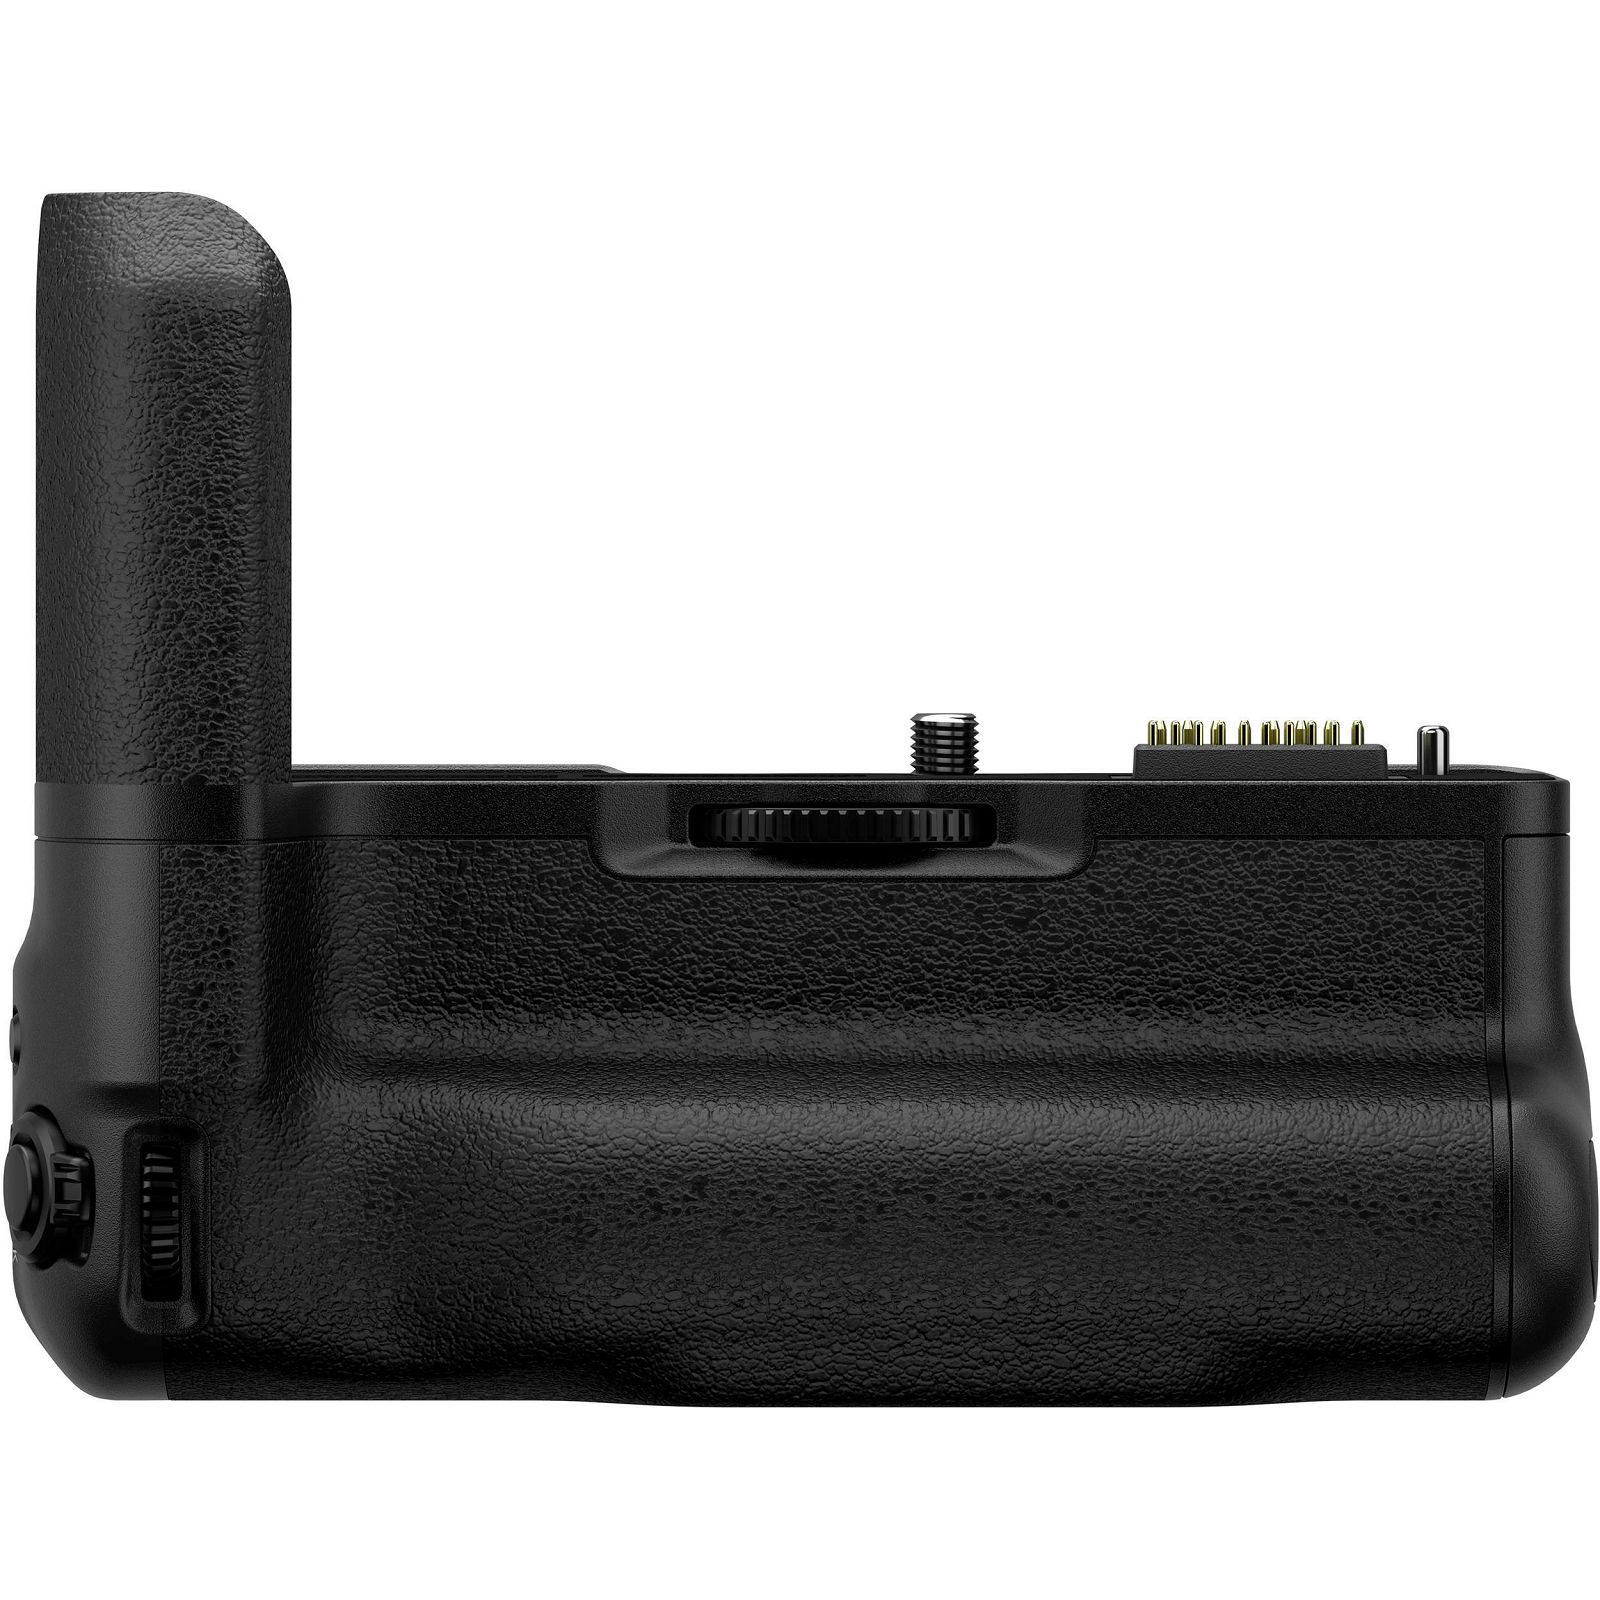 Fujifilm VG-XT4 Battery Grip držač baterija za Fuji X-T4 (16651332)